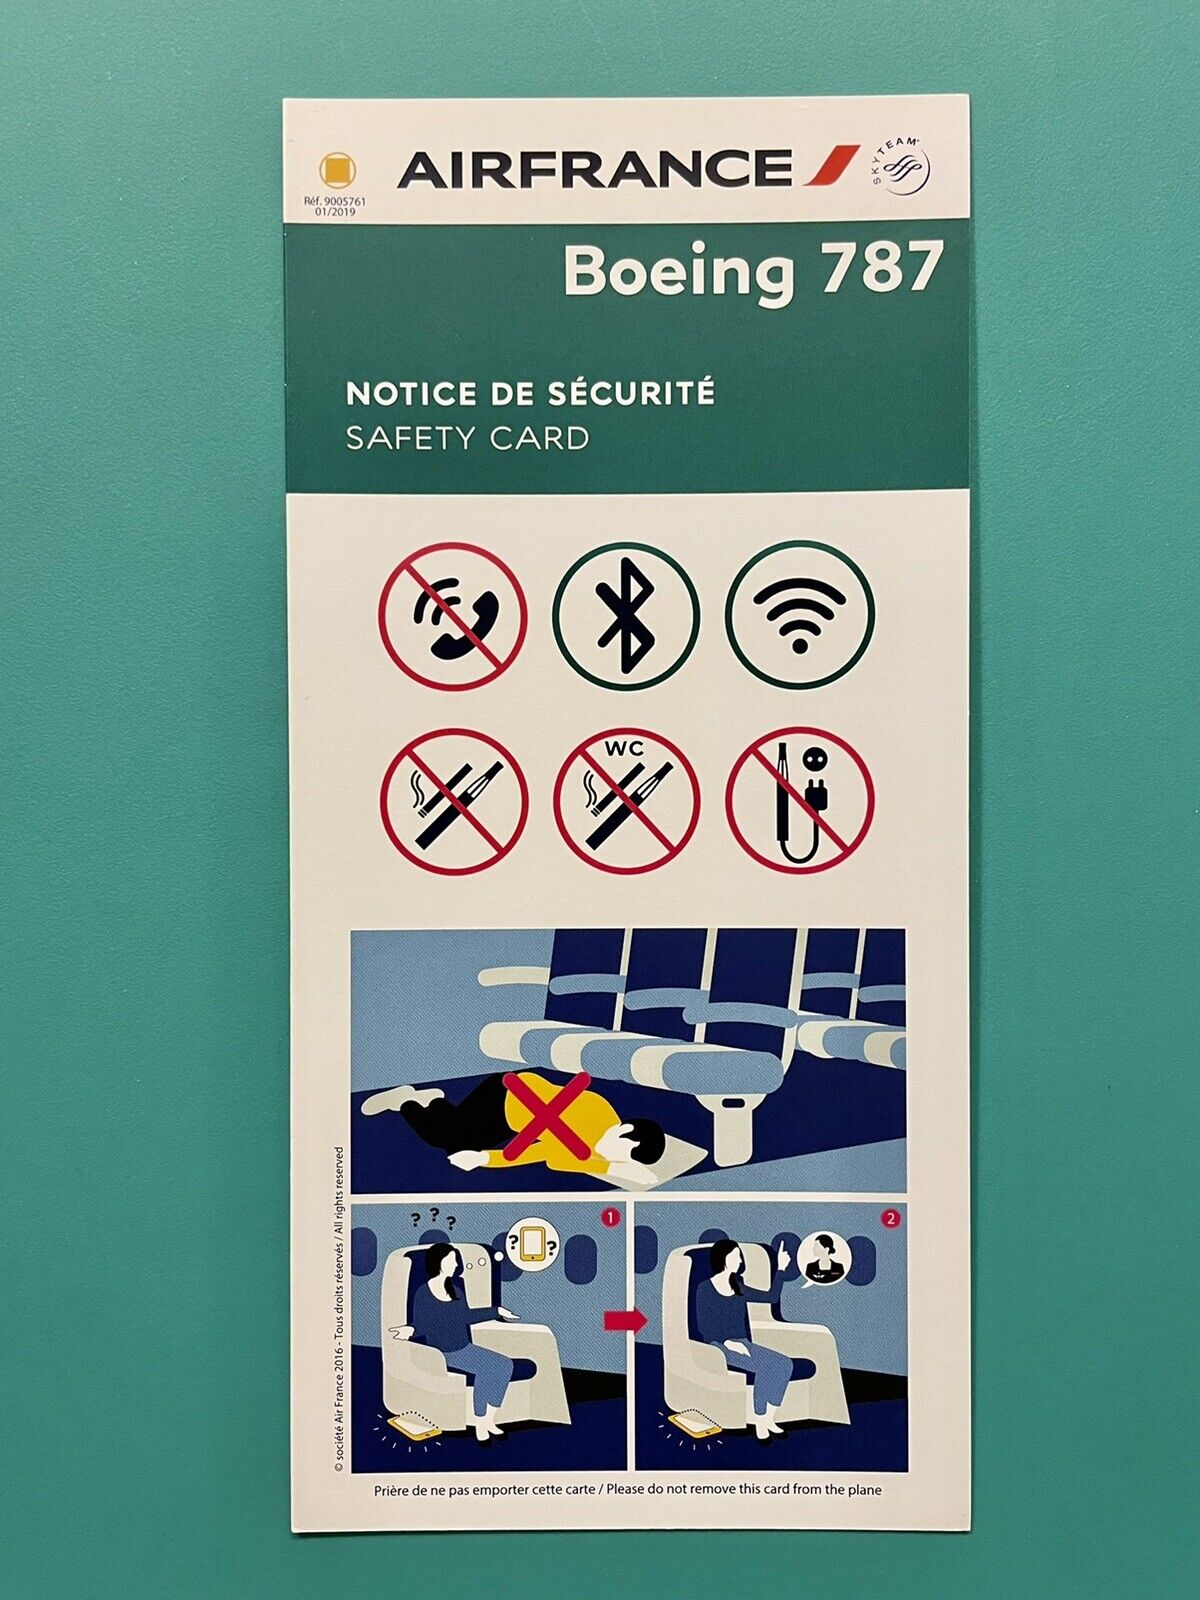 AIR FRANCE SAFETY CARD —787–2019